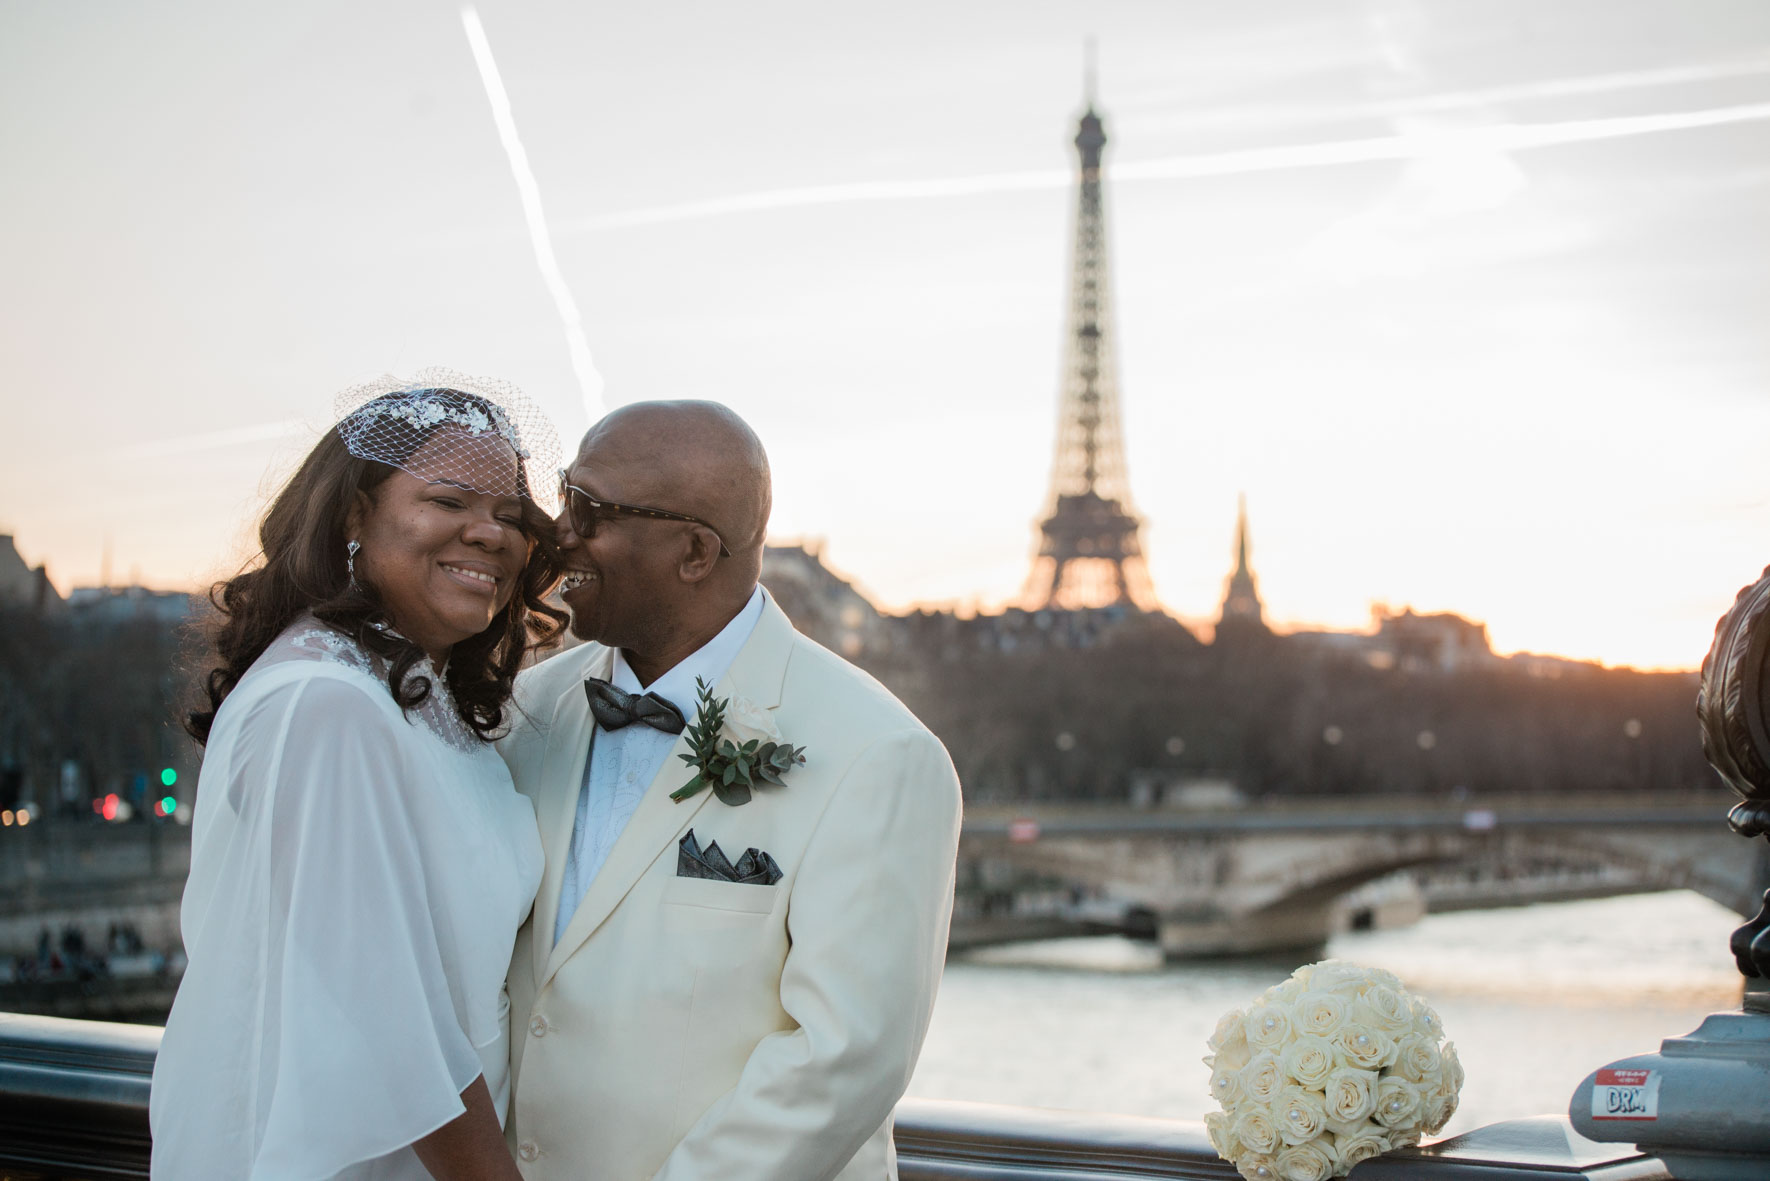 Destination wedding in Paris shot